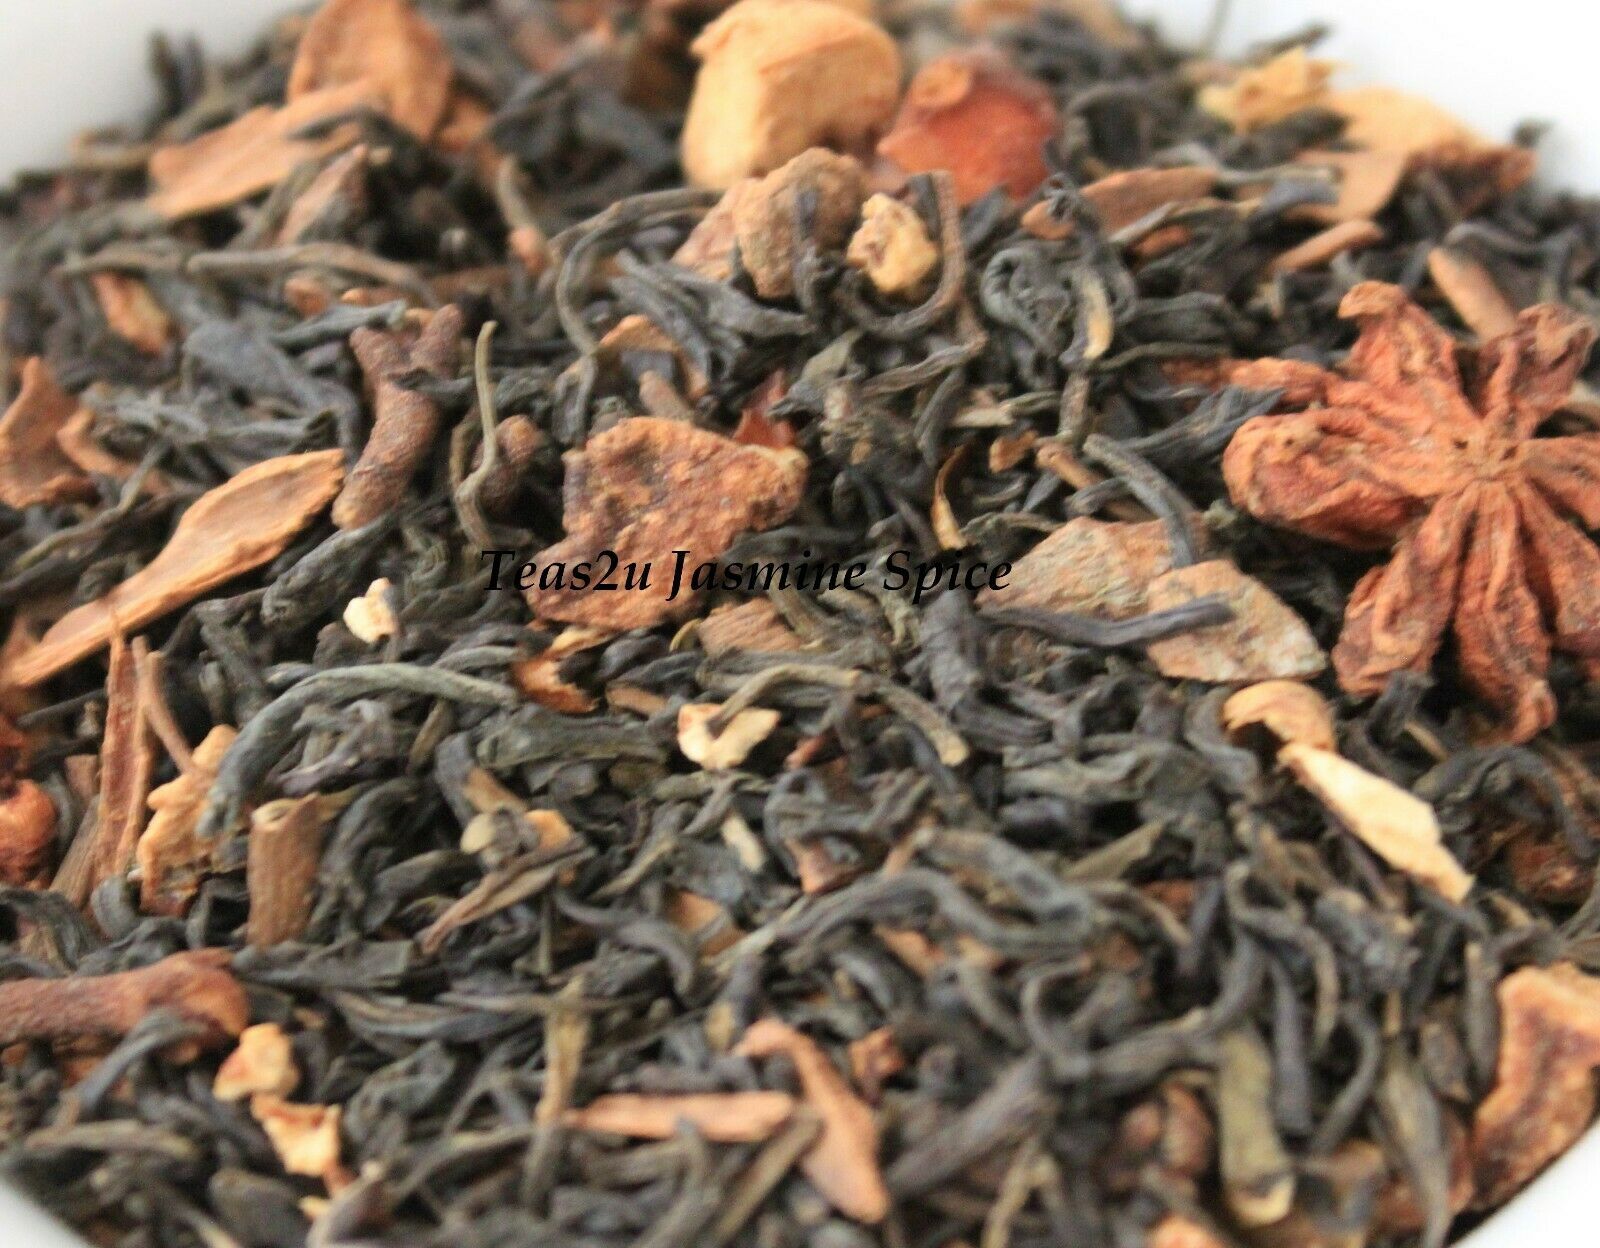 Primary image for Teas2u Jasmine Spice Loose Leaf Tea Blend (1/2 LB/227 grams)